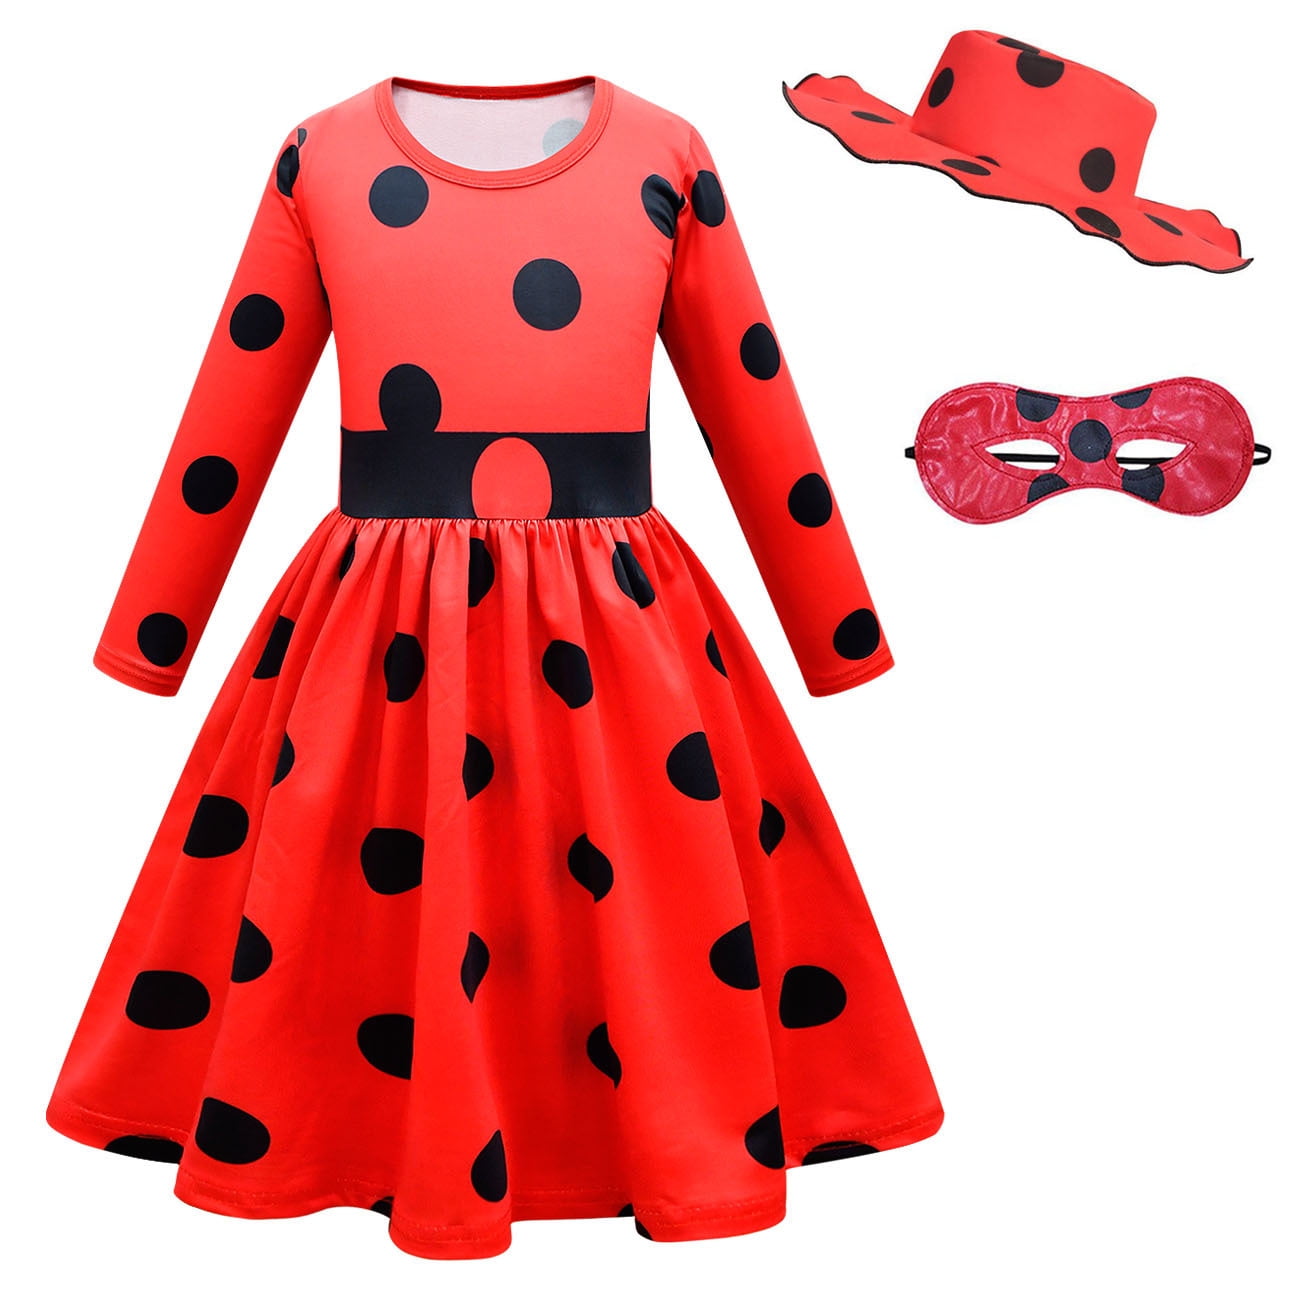 ladybug dress